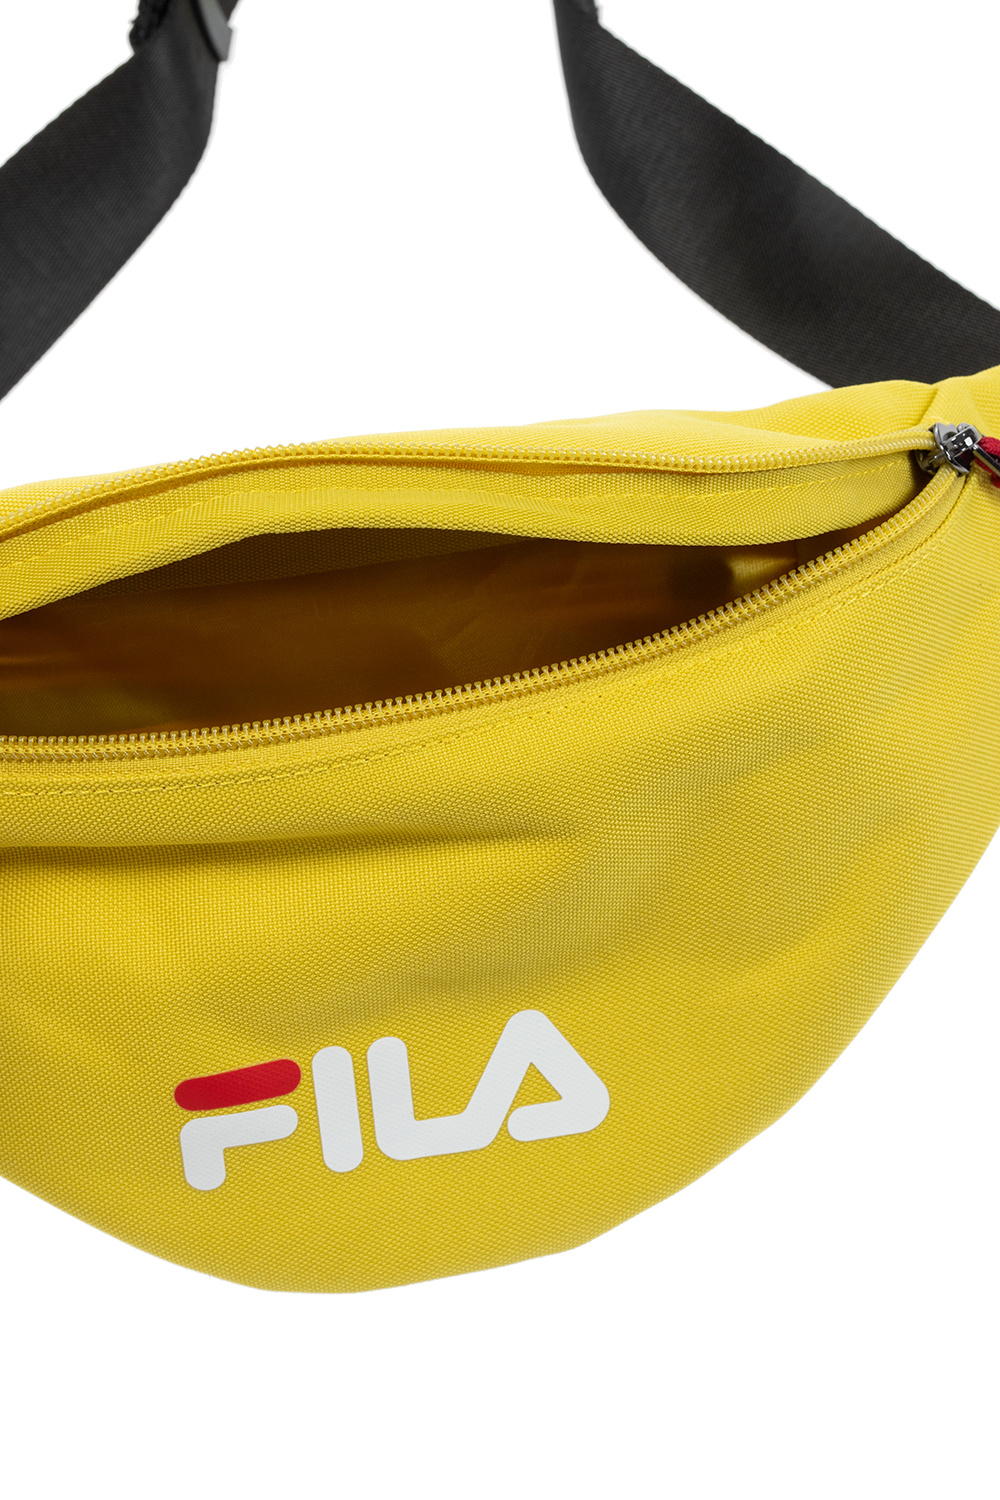 Fila Branded belt bag